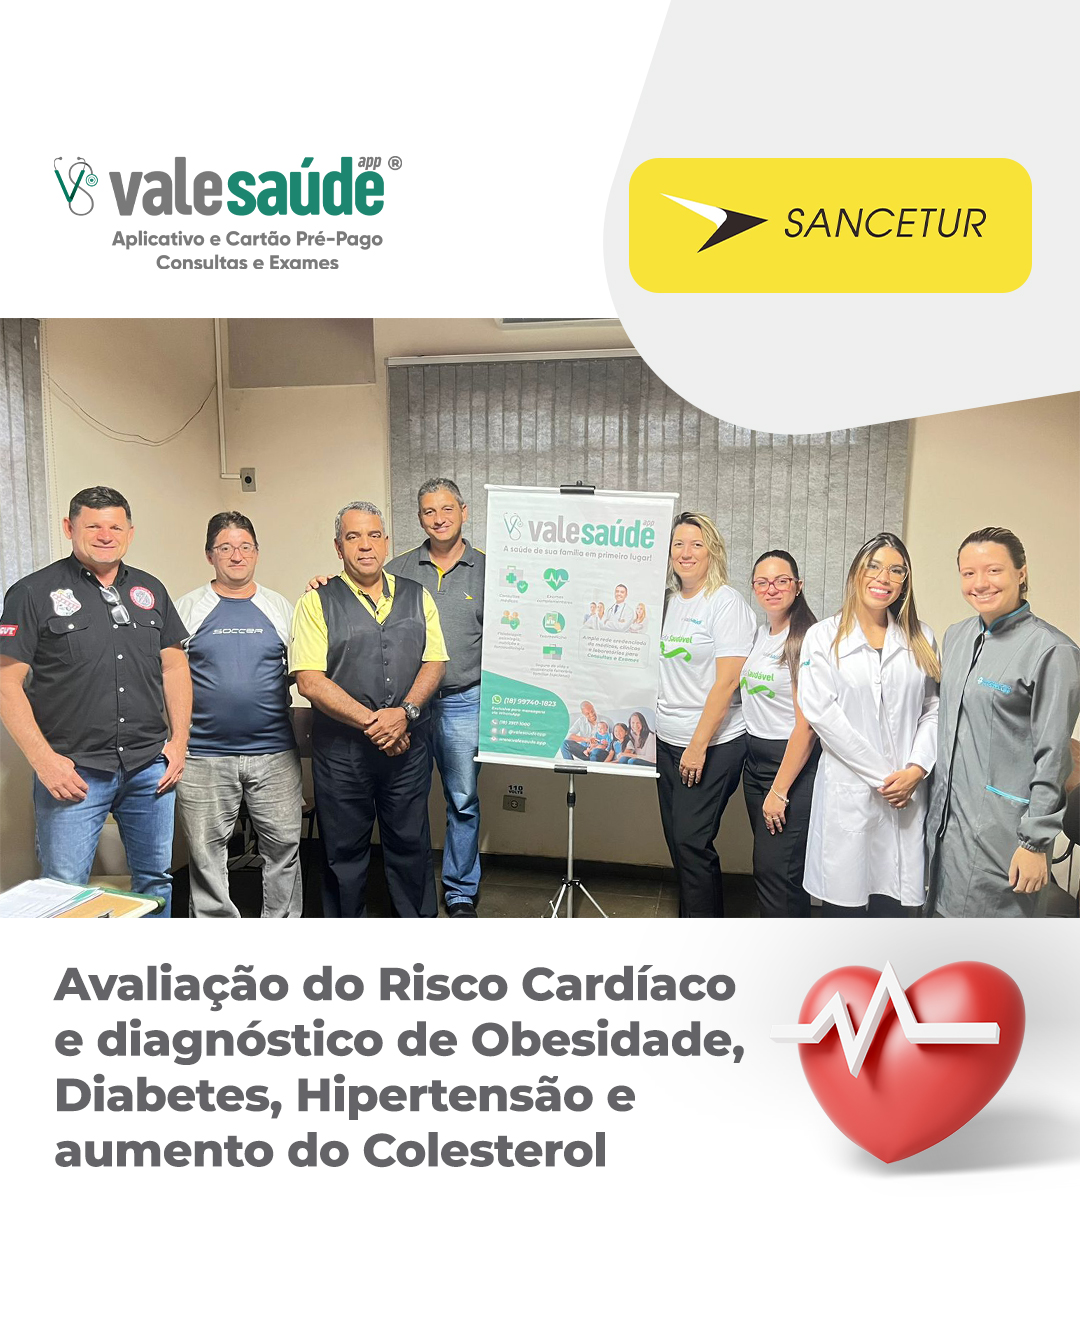 Programa de Avaliação do Risco Cardíaco e diagnóstico de Obesidade, Diabetes, Hipertensão e aumento do Colesterol - Sancetur